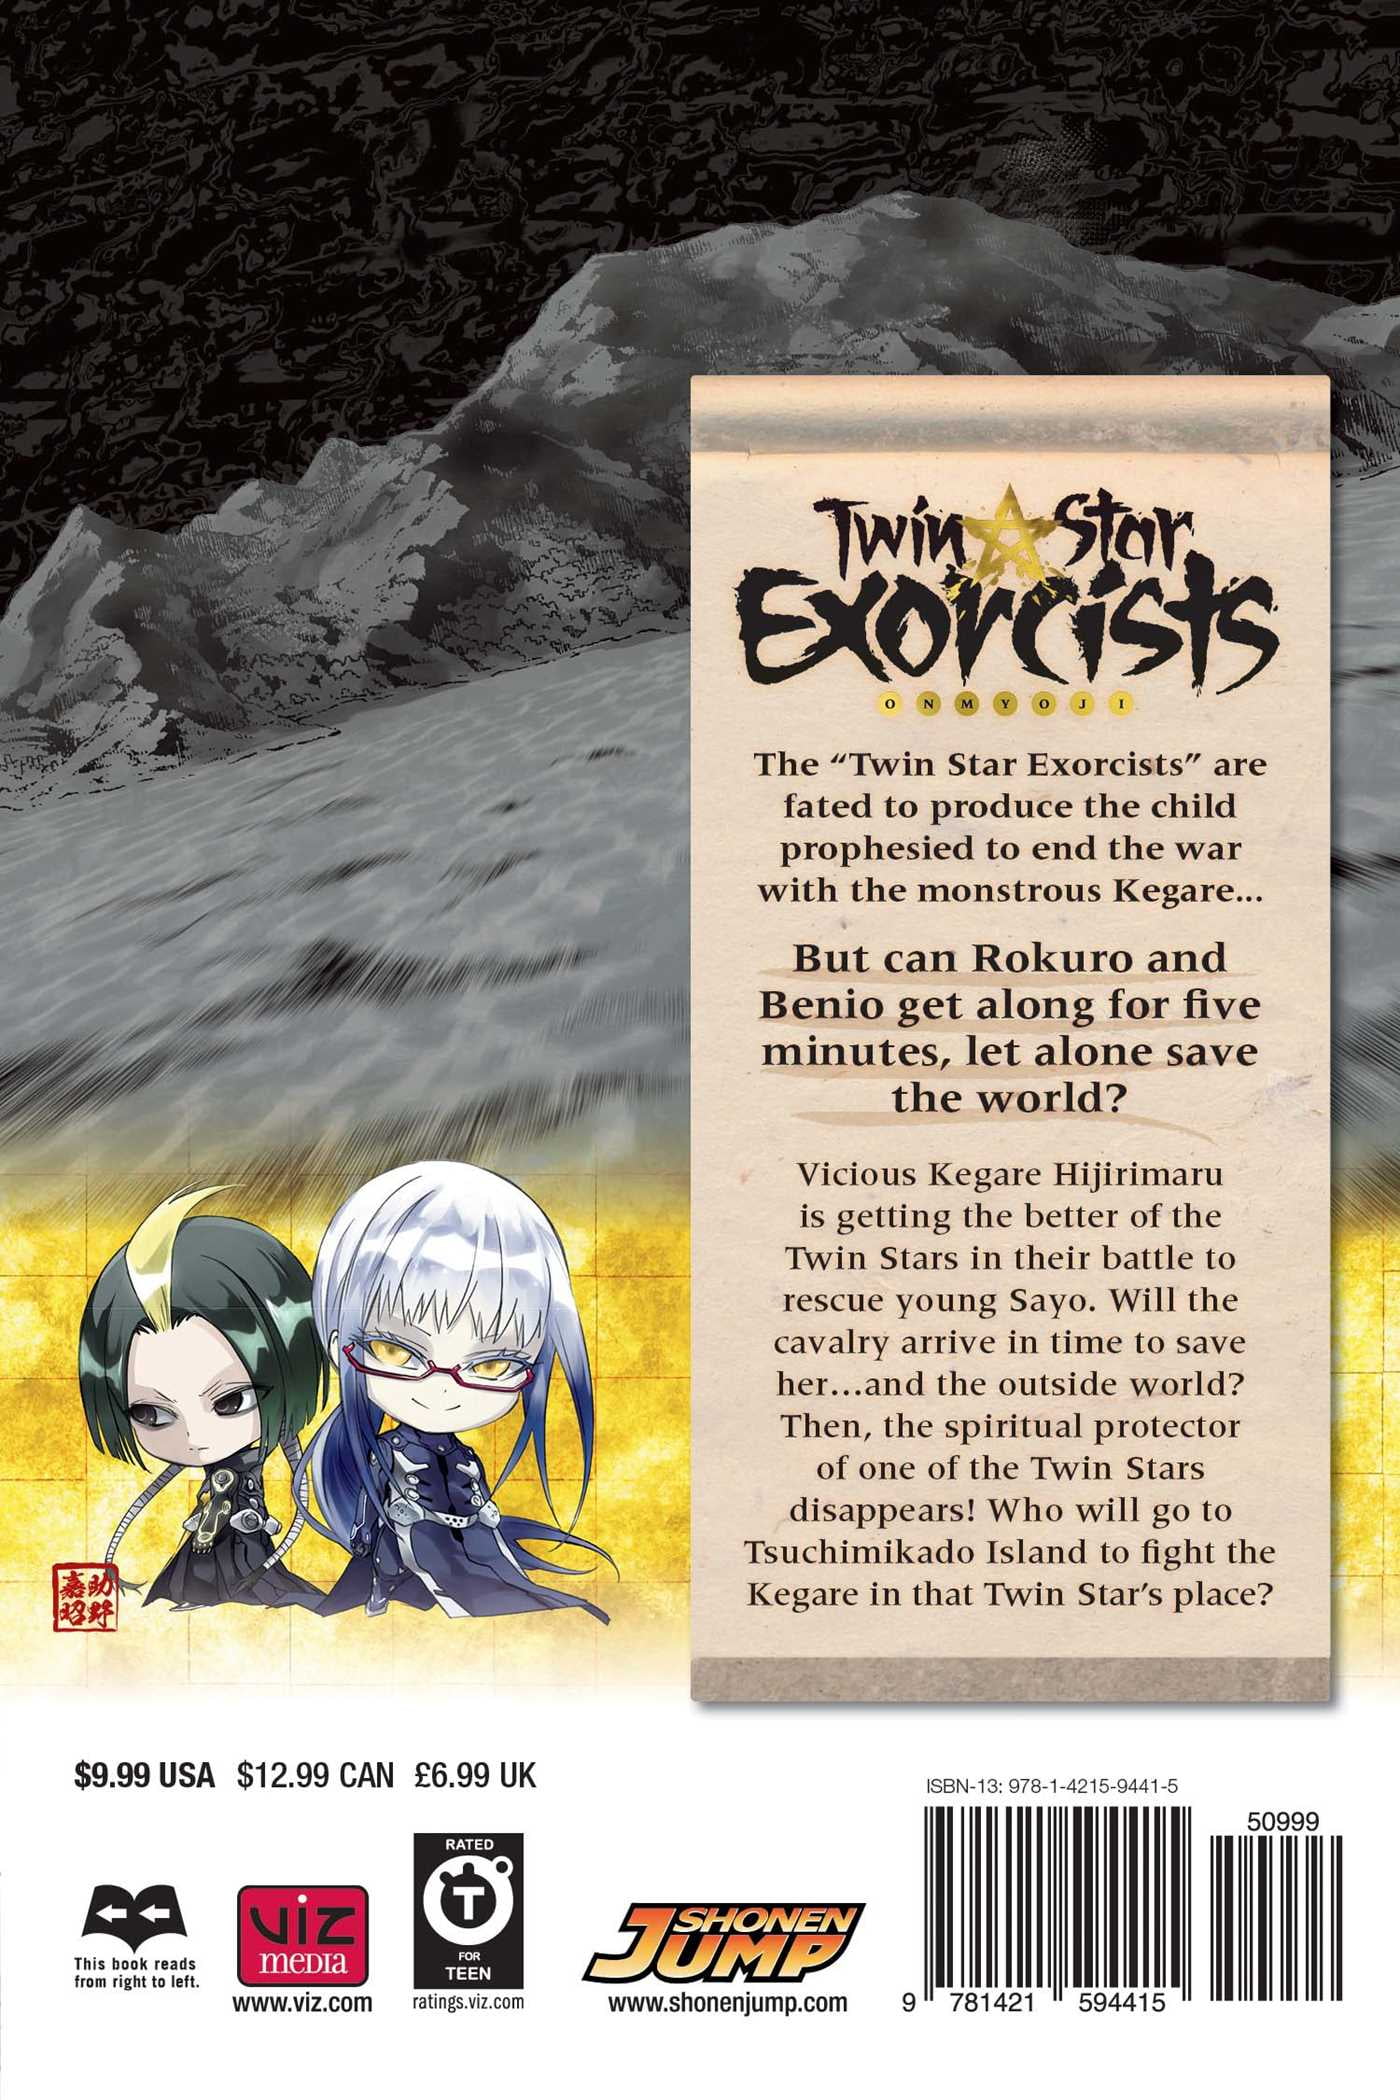 Twin Star Exorcists, Vol. 17: Onmyoji by Sukeno, Yoshiaki